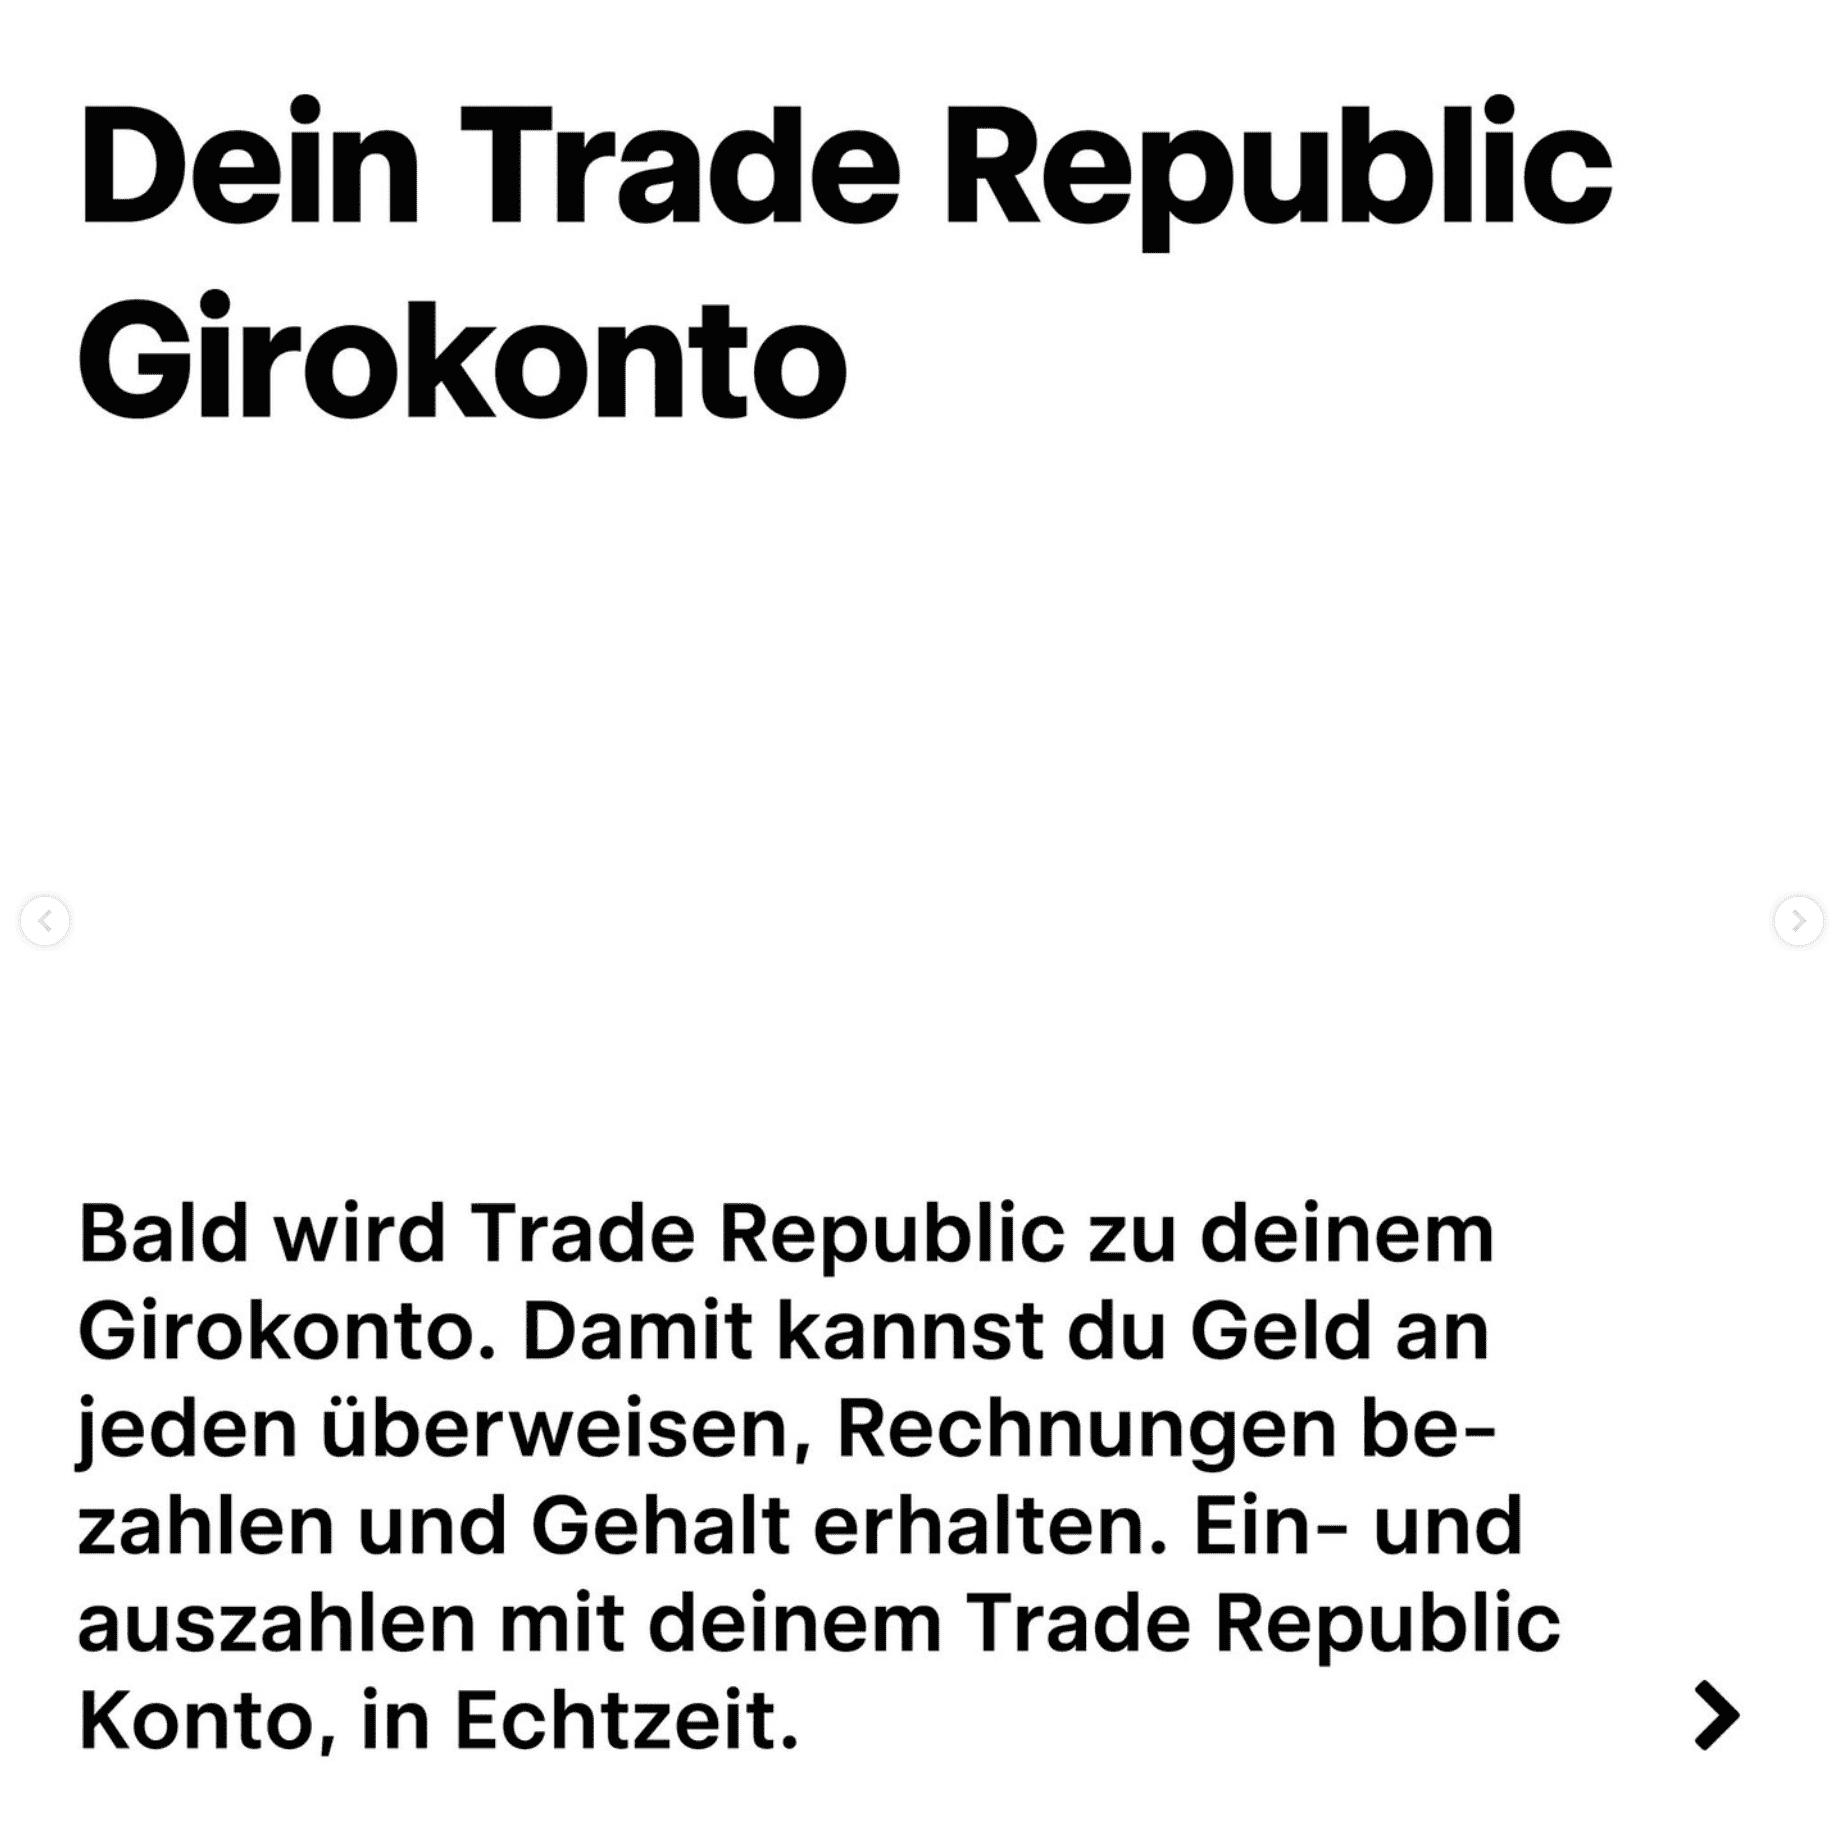 Das Trade Republic Girokonto kommt